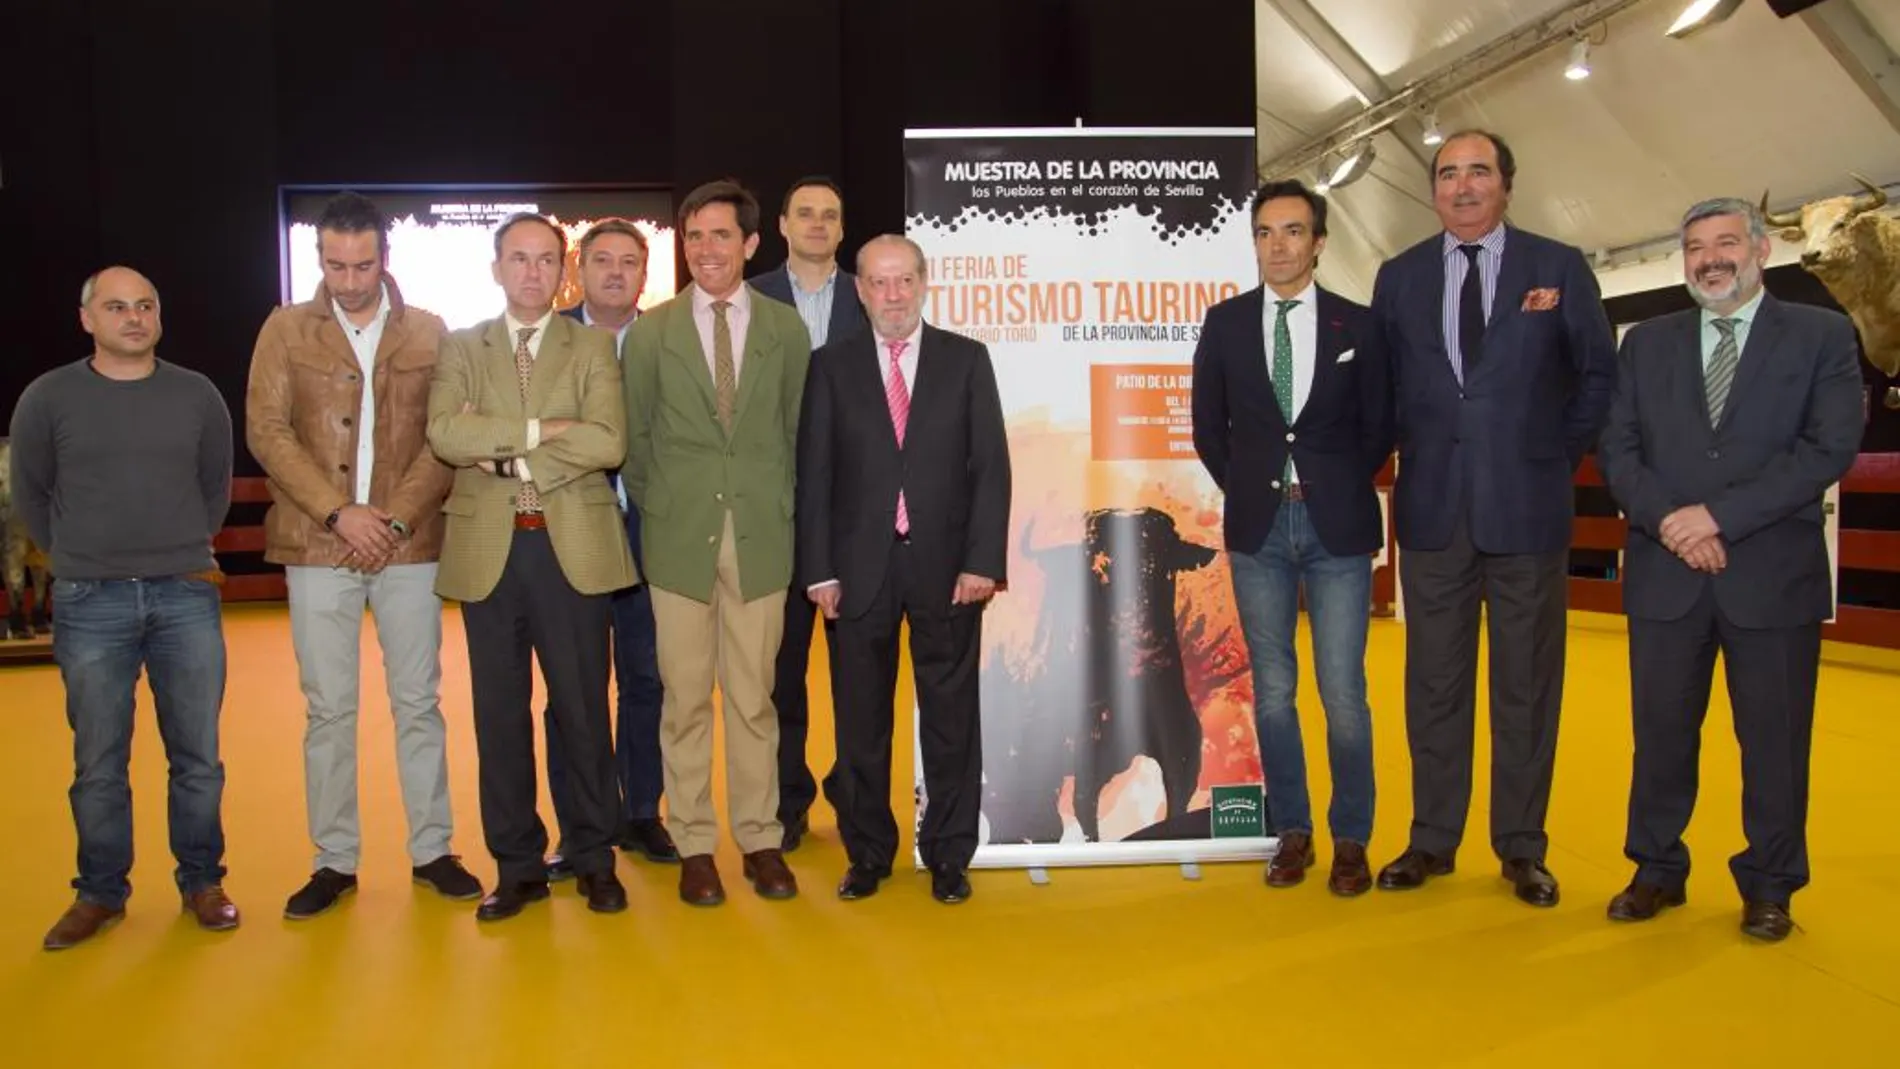 Inauguración de la Feria de Turismo Taurino en la Provincia de Sevilla